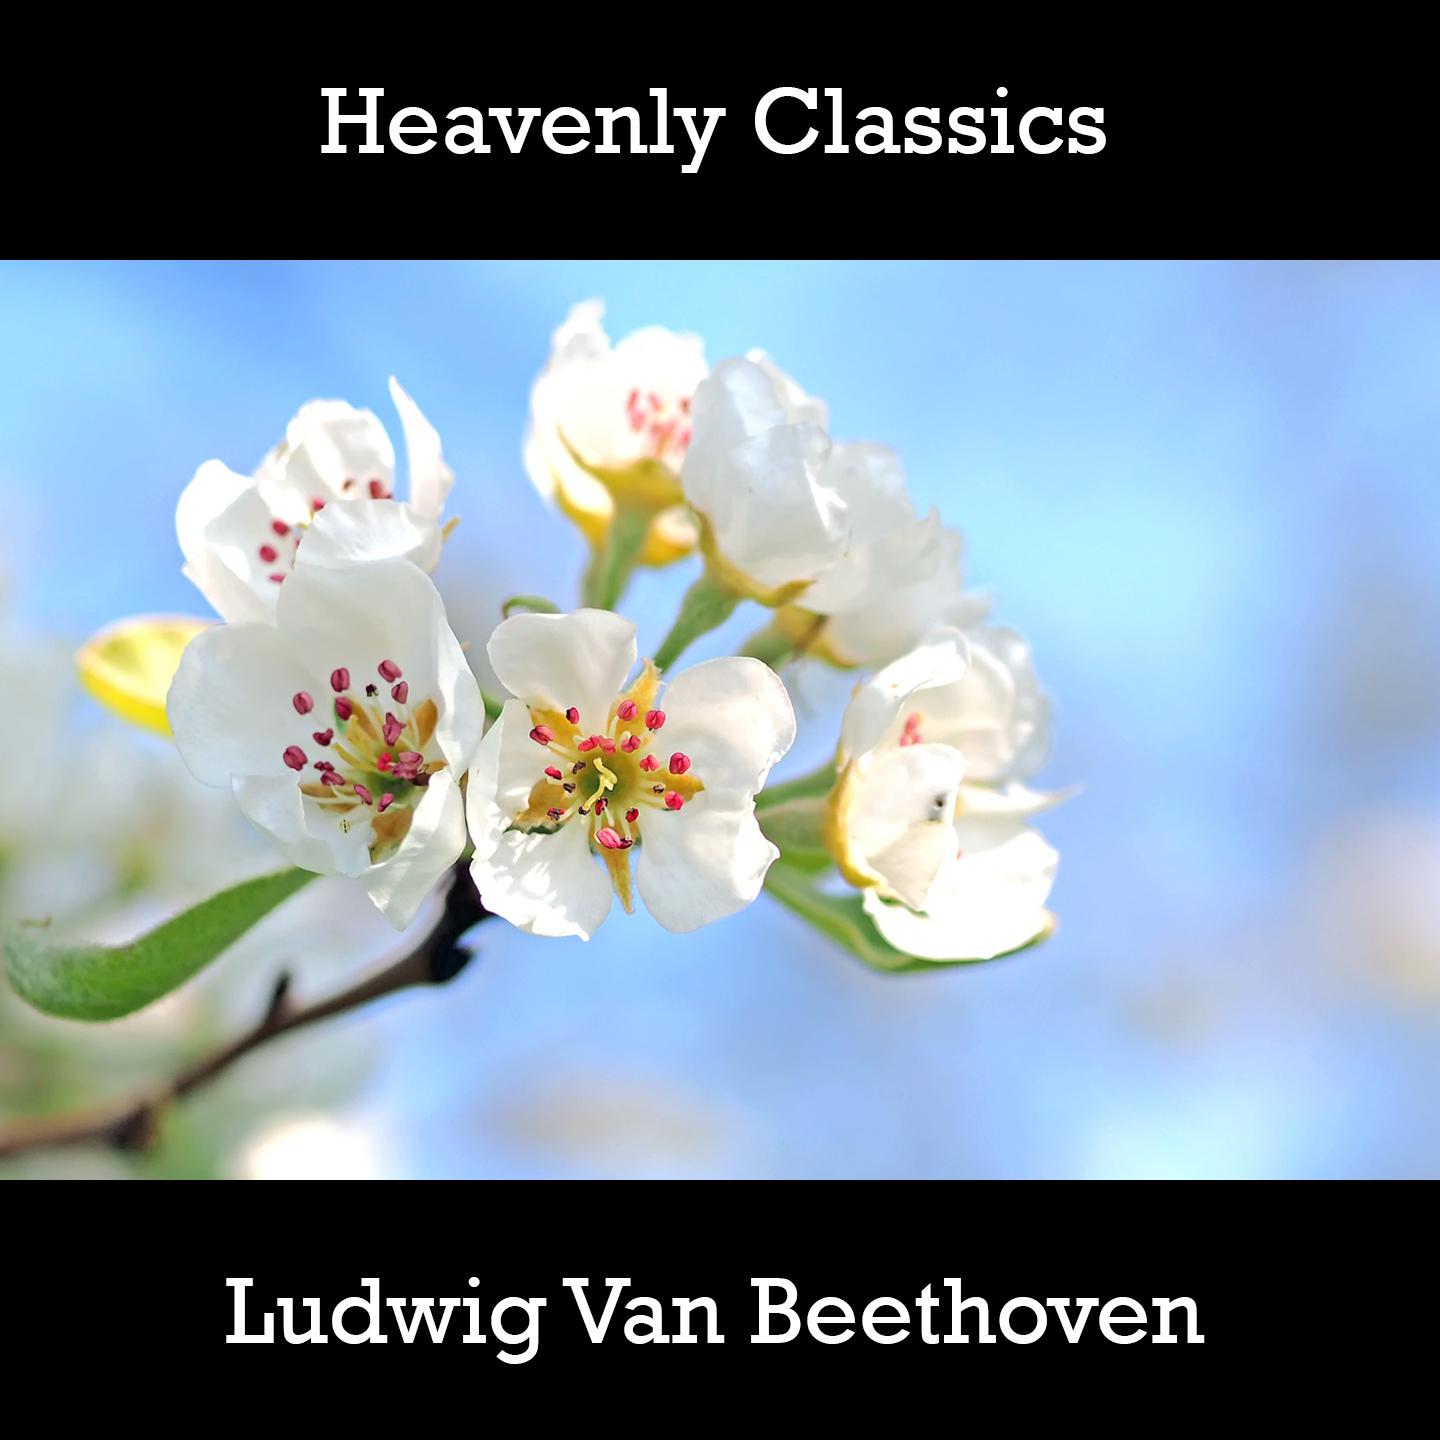 Heavenly Classics Ludwig Van Beethoven